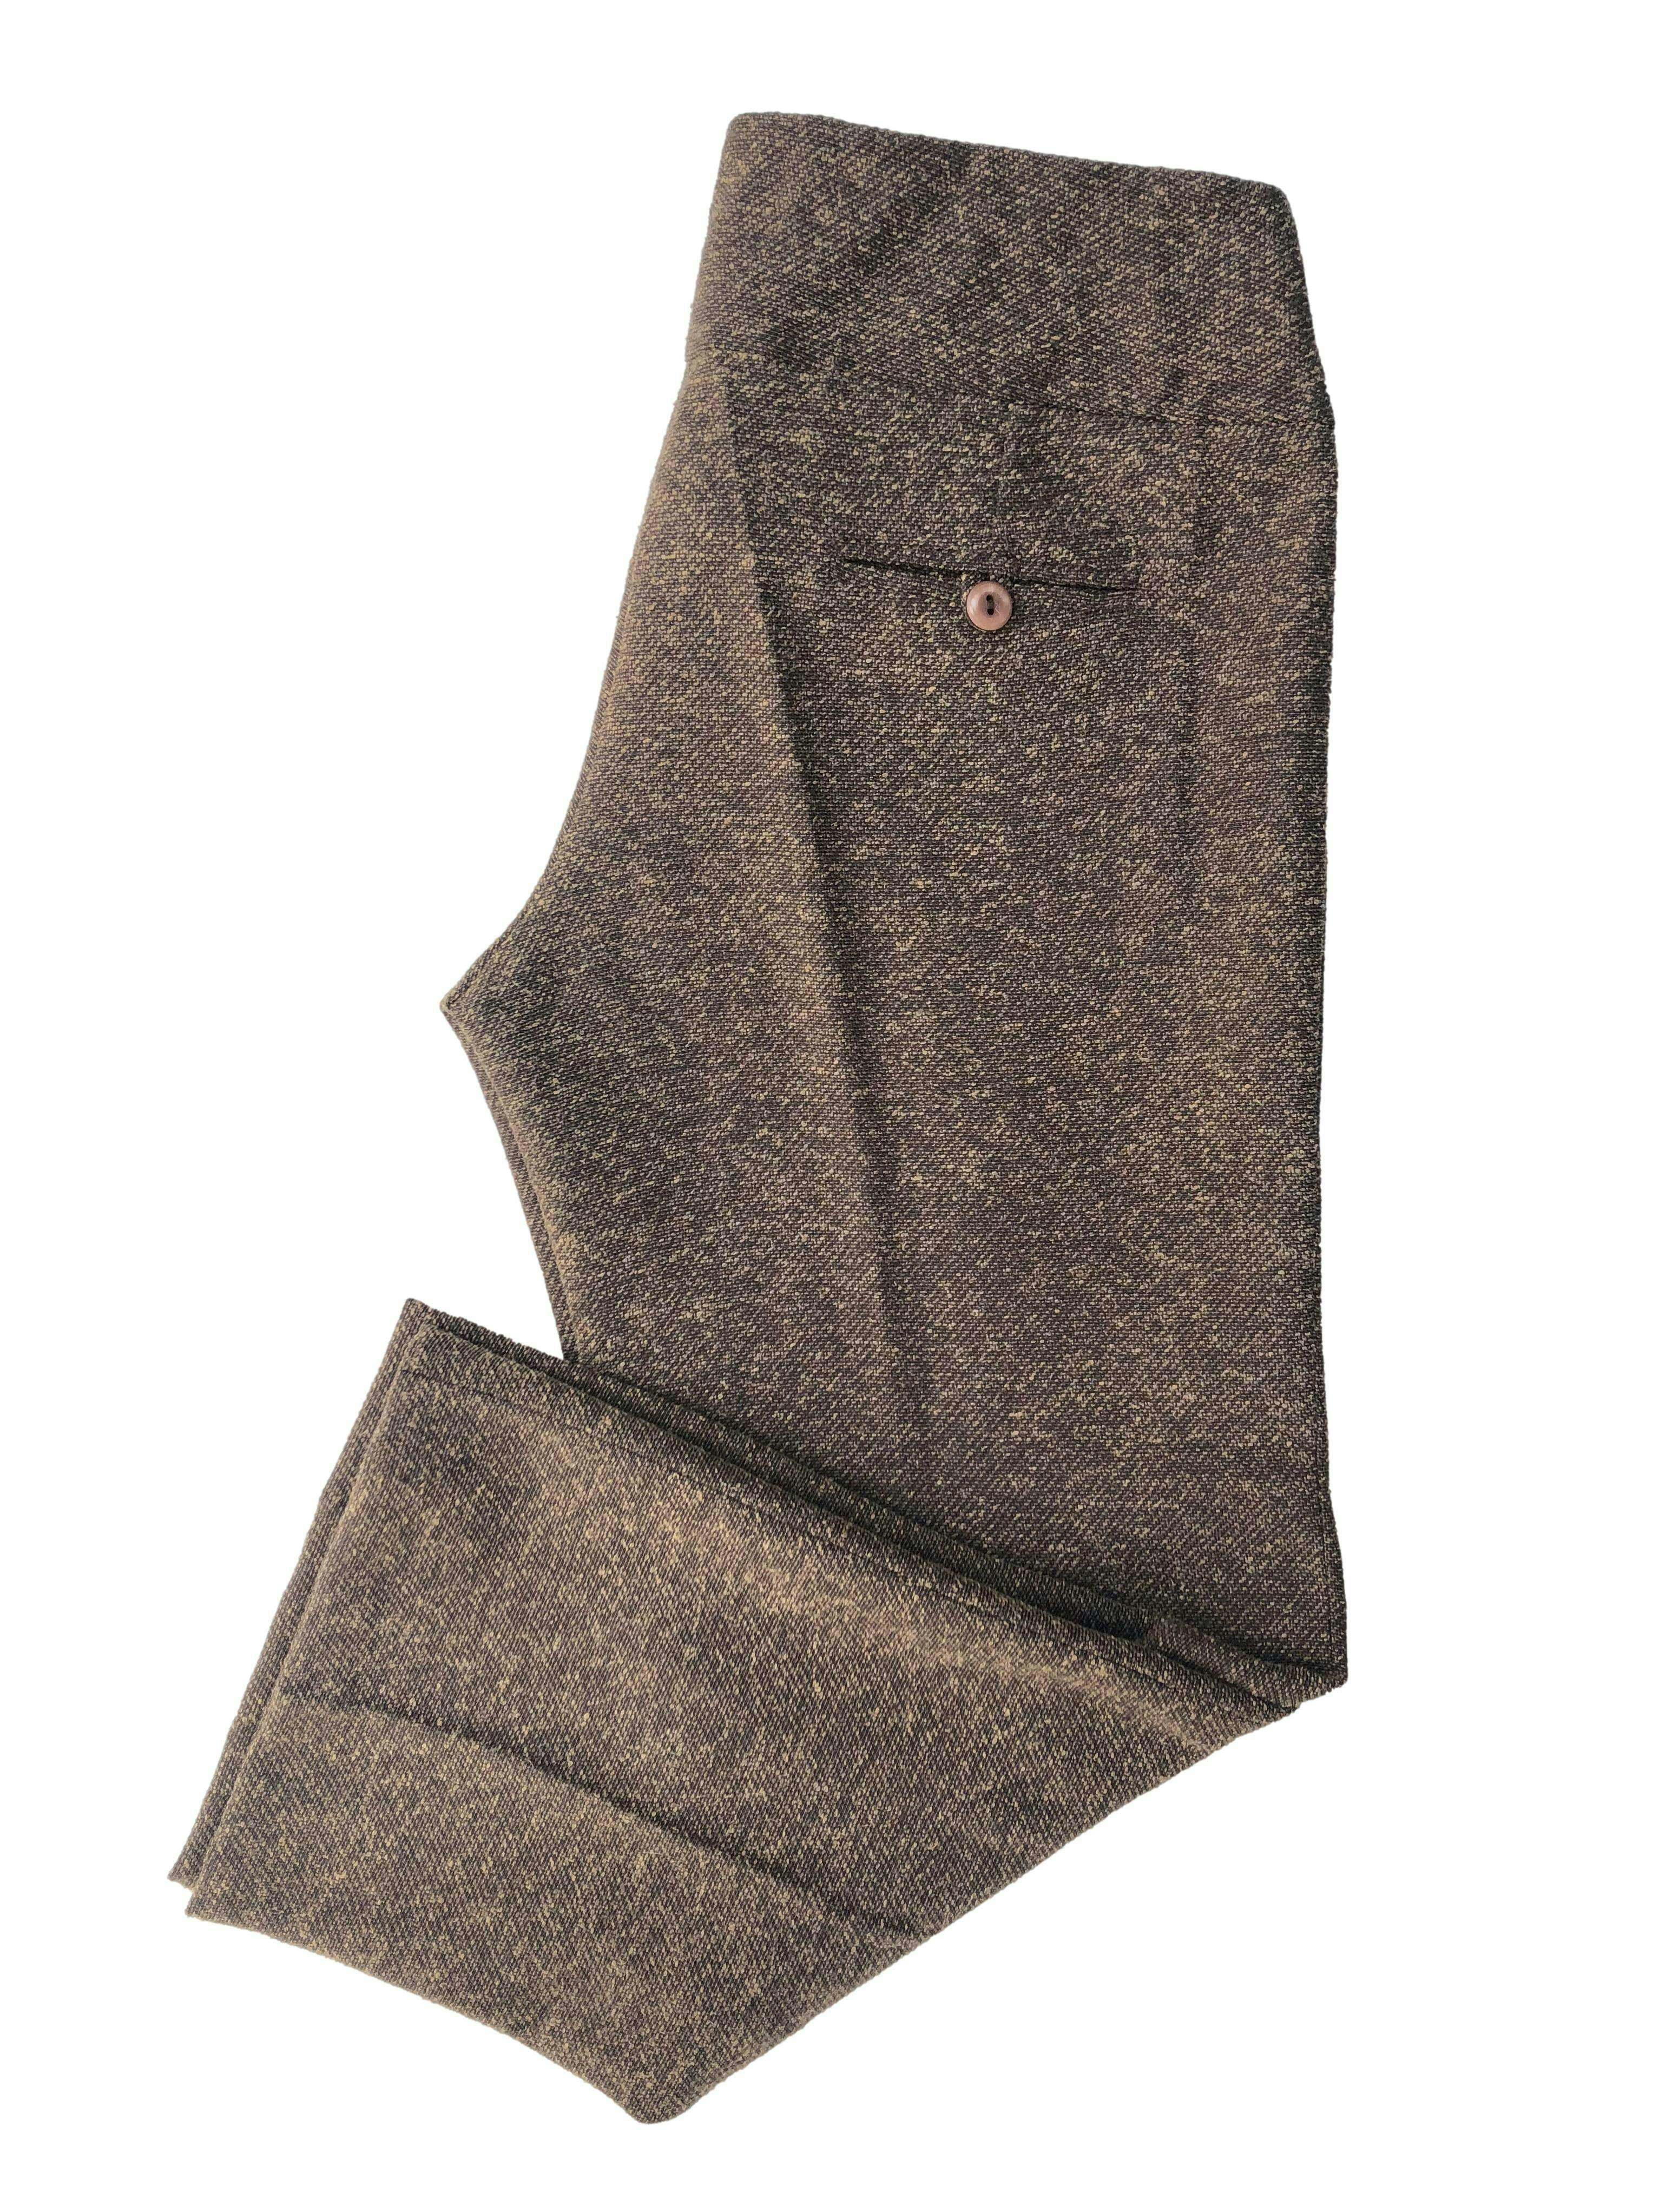 Pantalón capri Michelle Belau marrón de lanilla , tiro medio con pretina ancha y un bolsillo posterior. Tiro 22cm, Cintura 80cm, Largo 80cm.